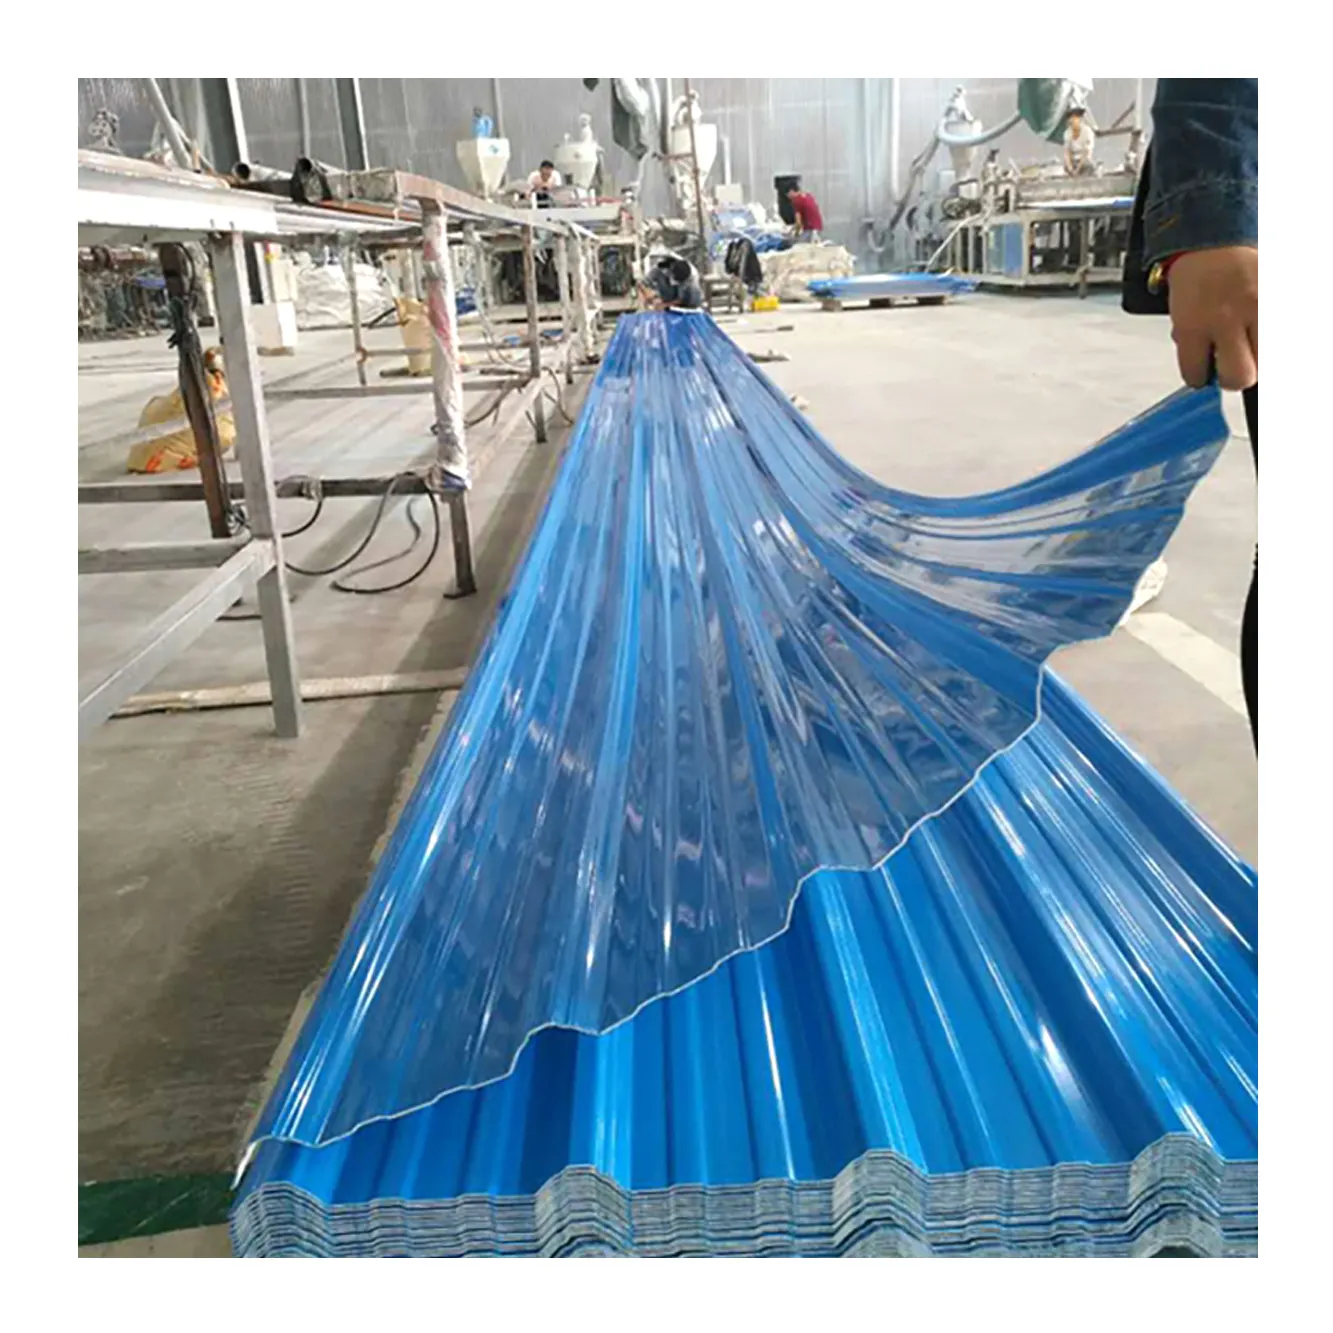 Billige Wellblech Stahlbleche verzinkte Metalldach materialien Farbe Dach Philippinen Preis